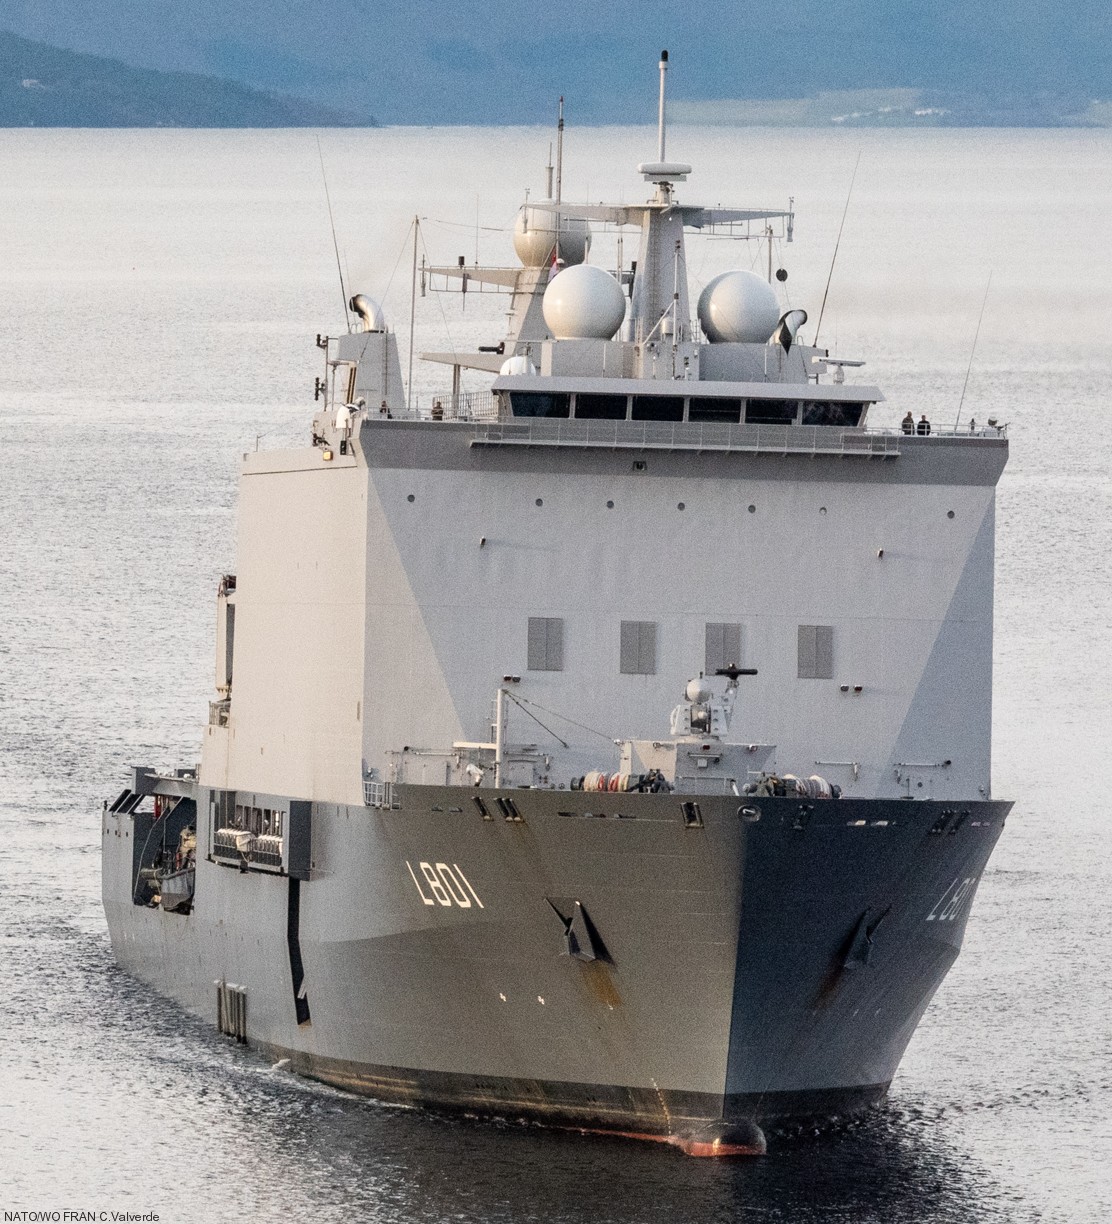 l-801 hnlms johan de witt amphibious ship landing platform dock lpd royal netherlands navy 11